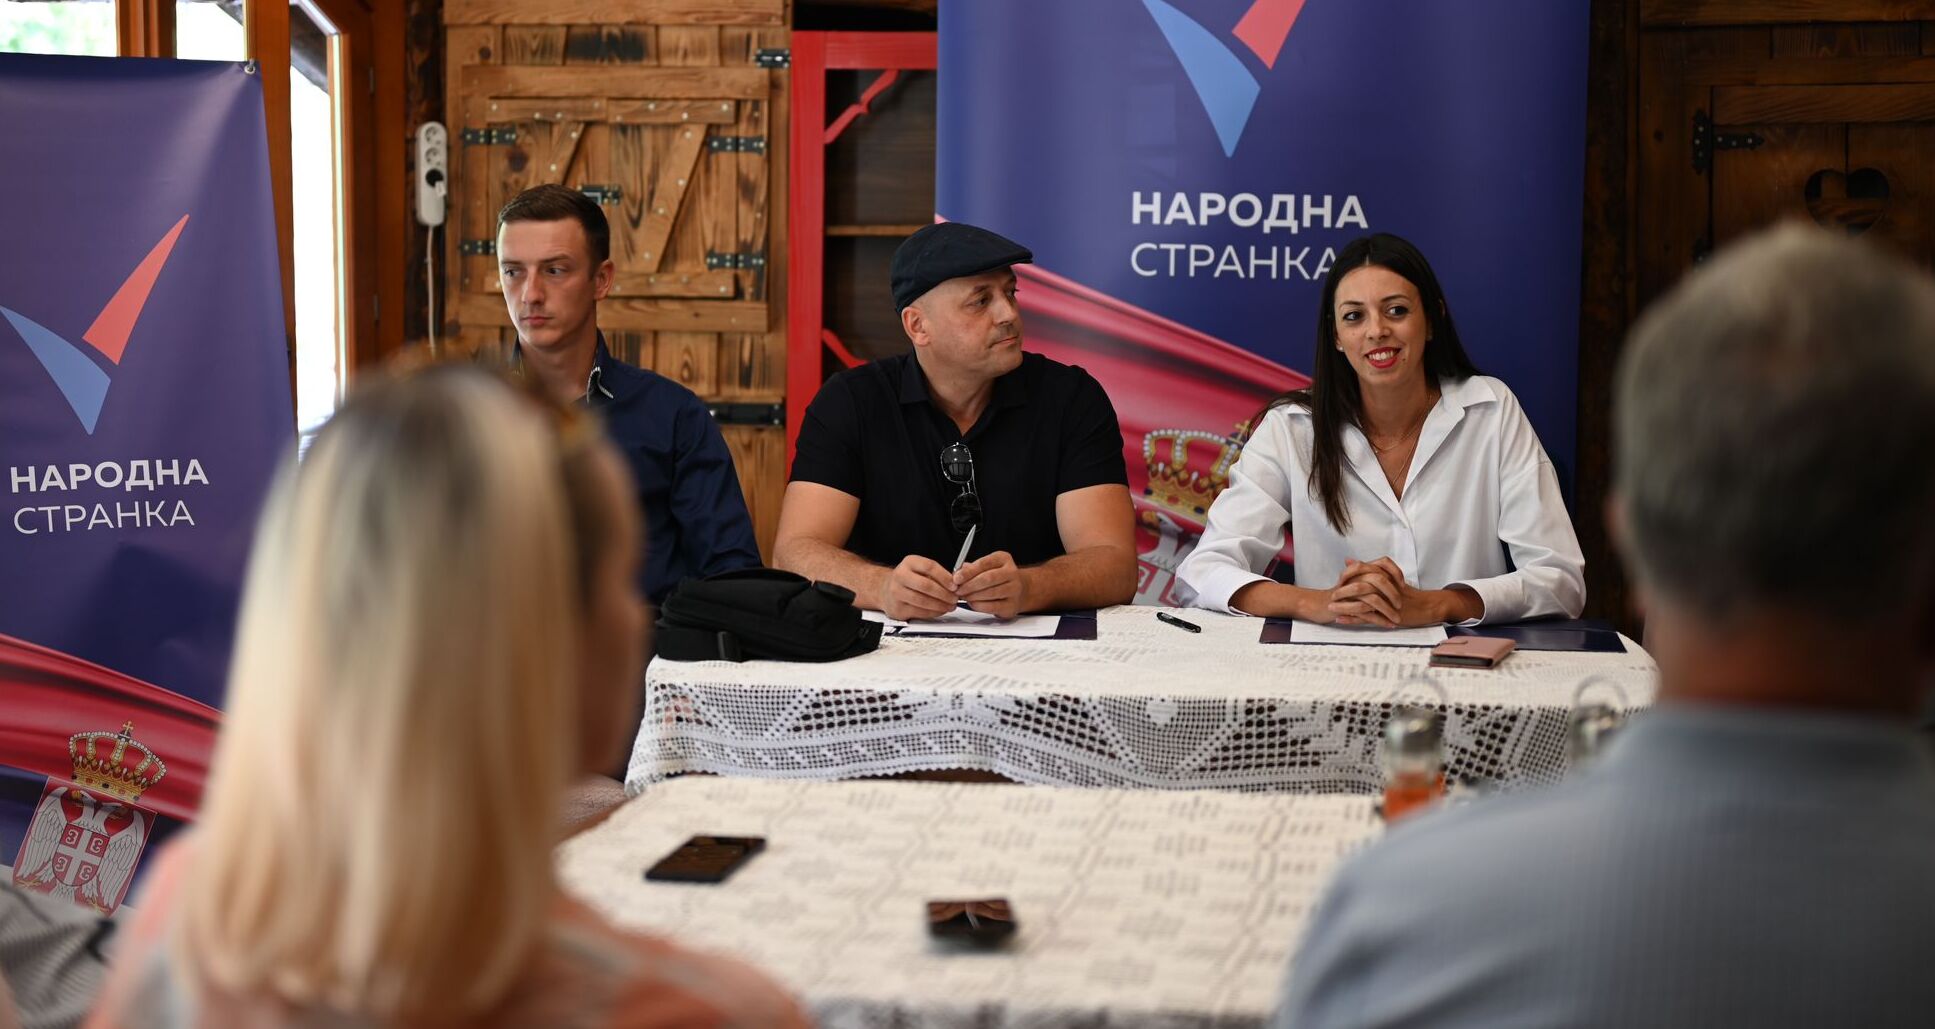 Београд: Општински одбор Народне странке Обреновац изабрао руководство и делегате за страначку скупштину